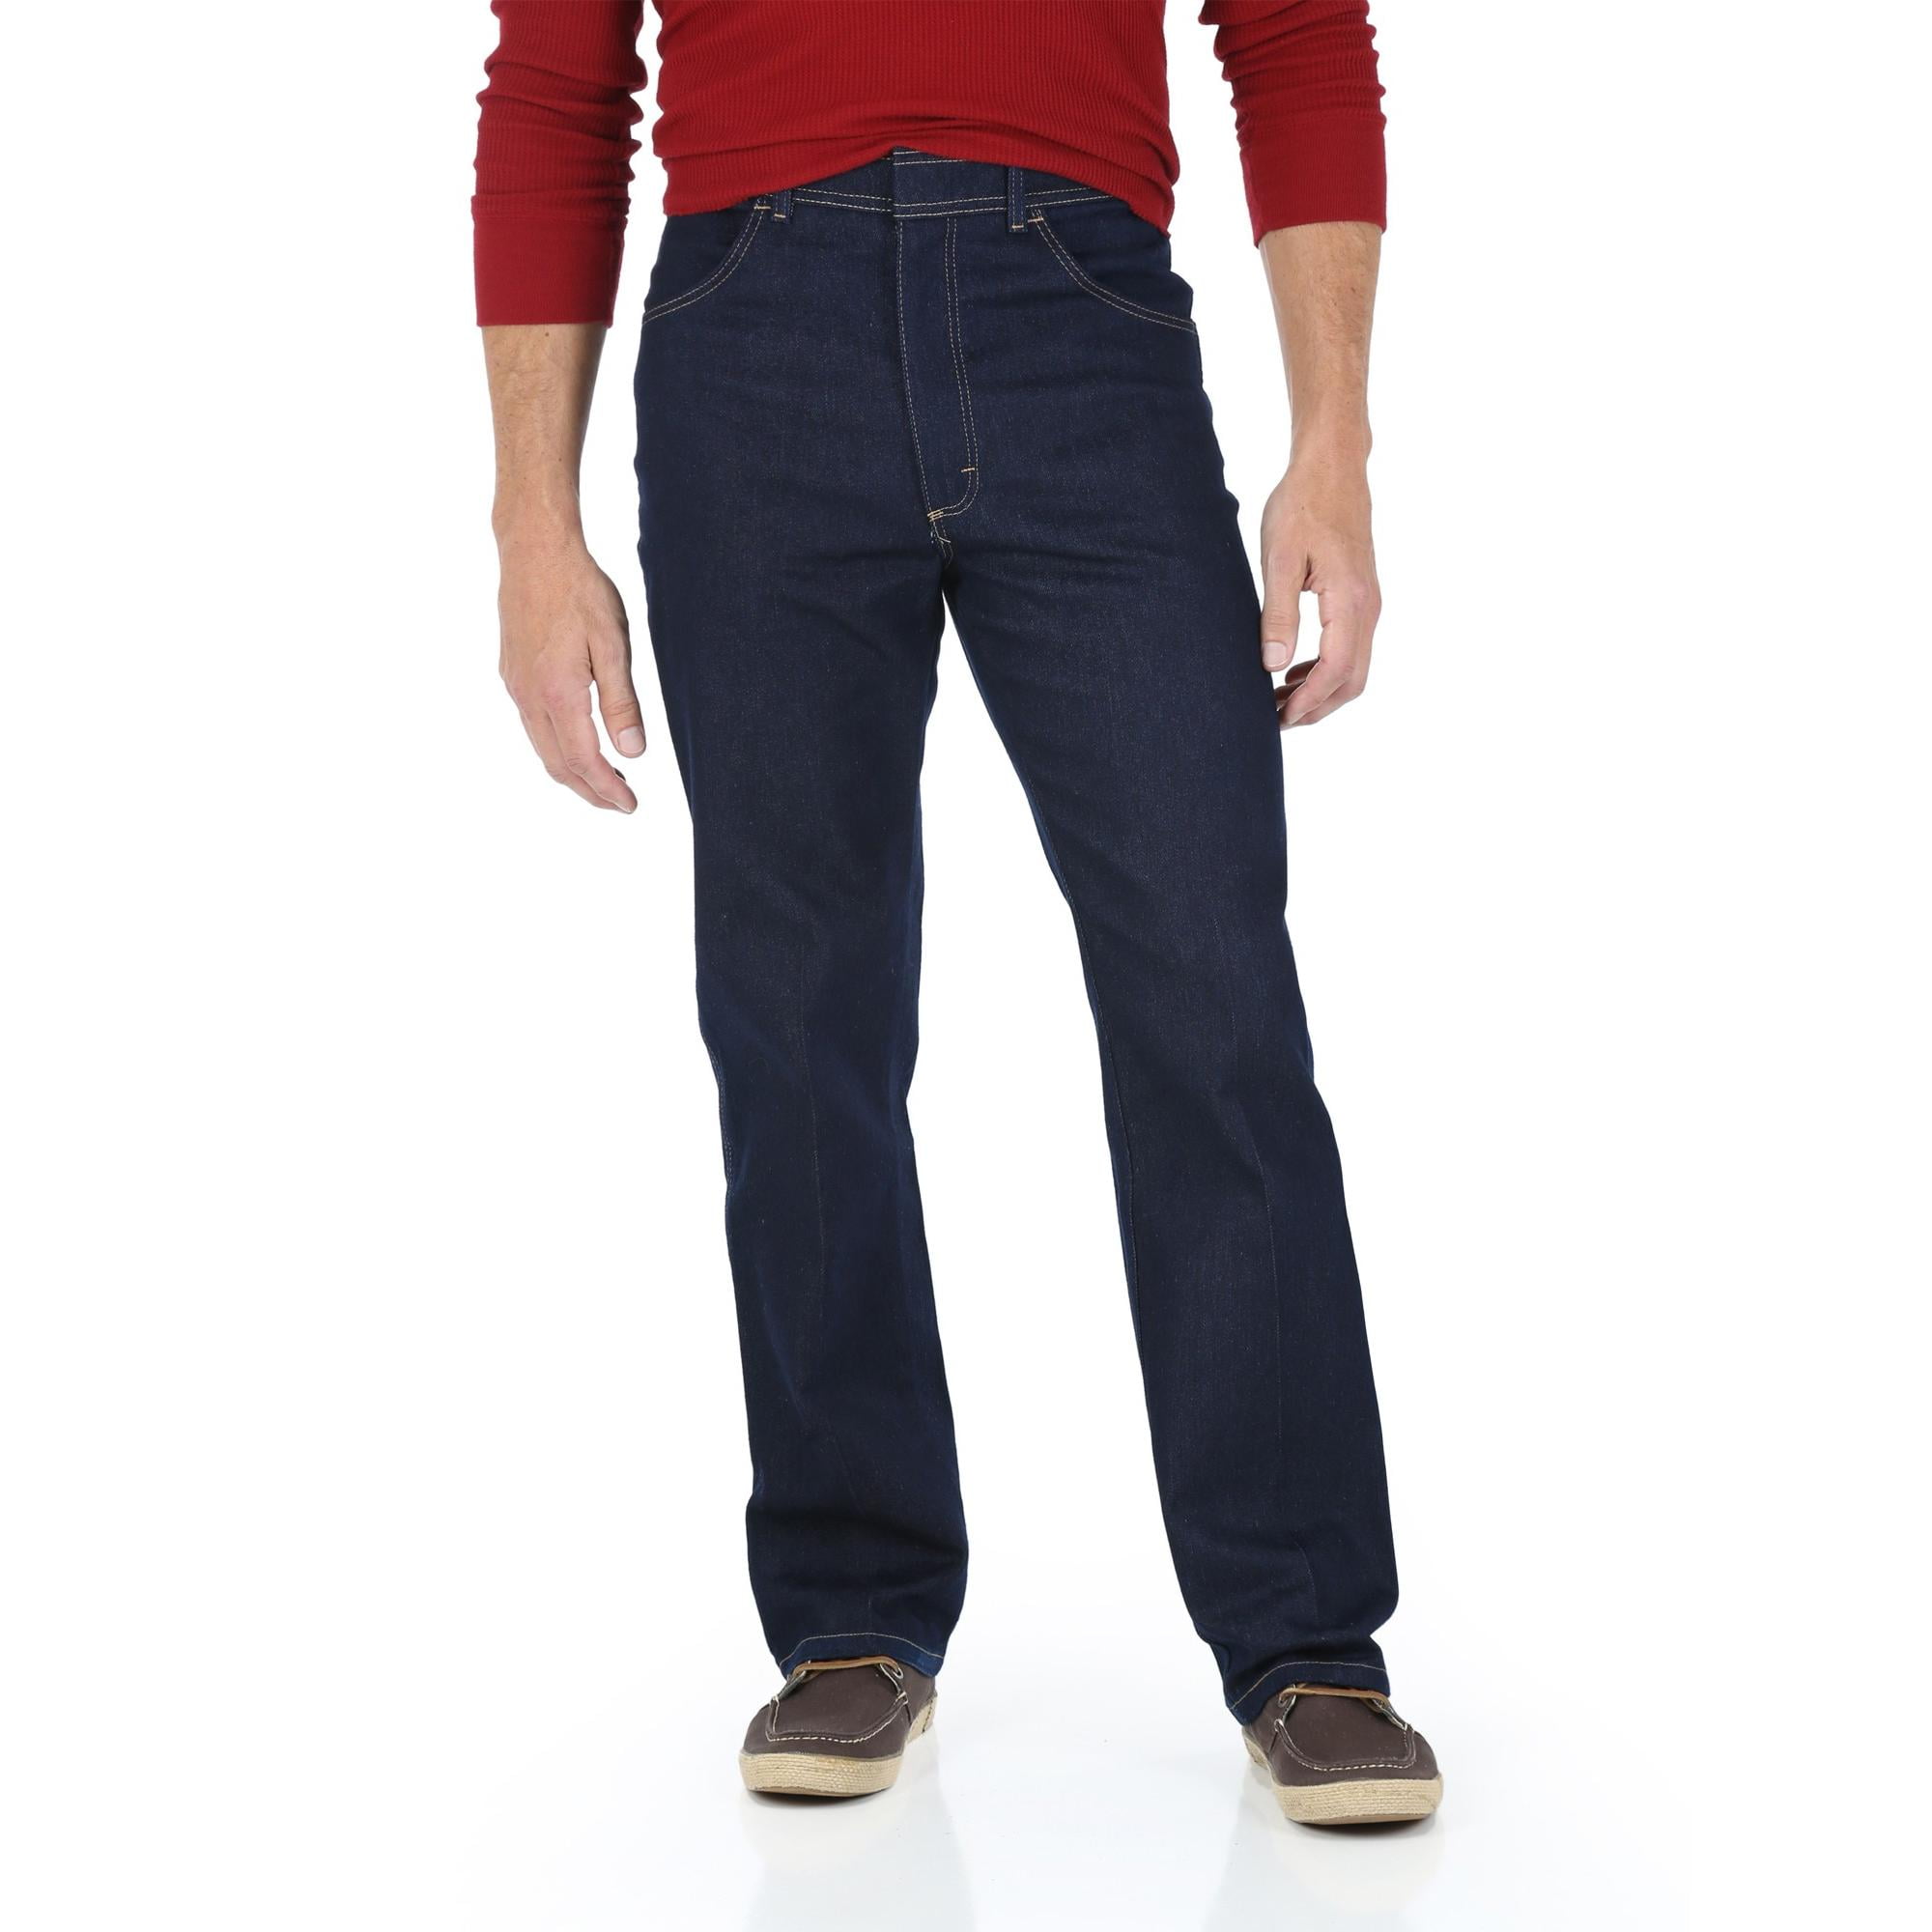 Arriba 45+ imagen wrangler flex waist jeans at walmart